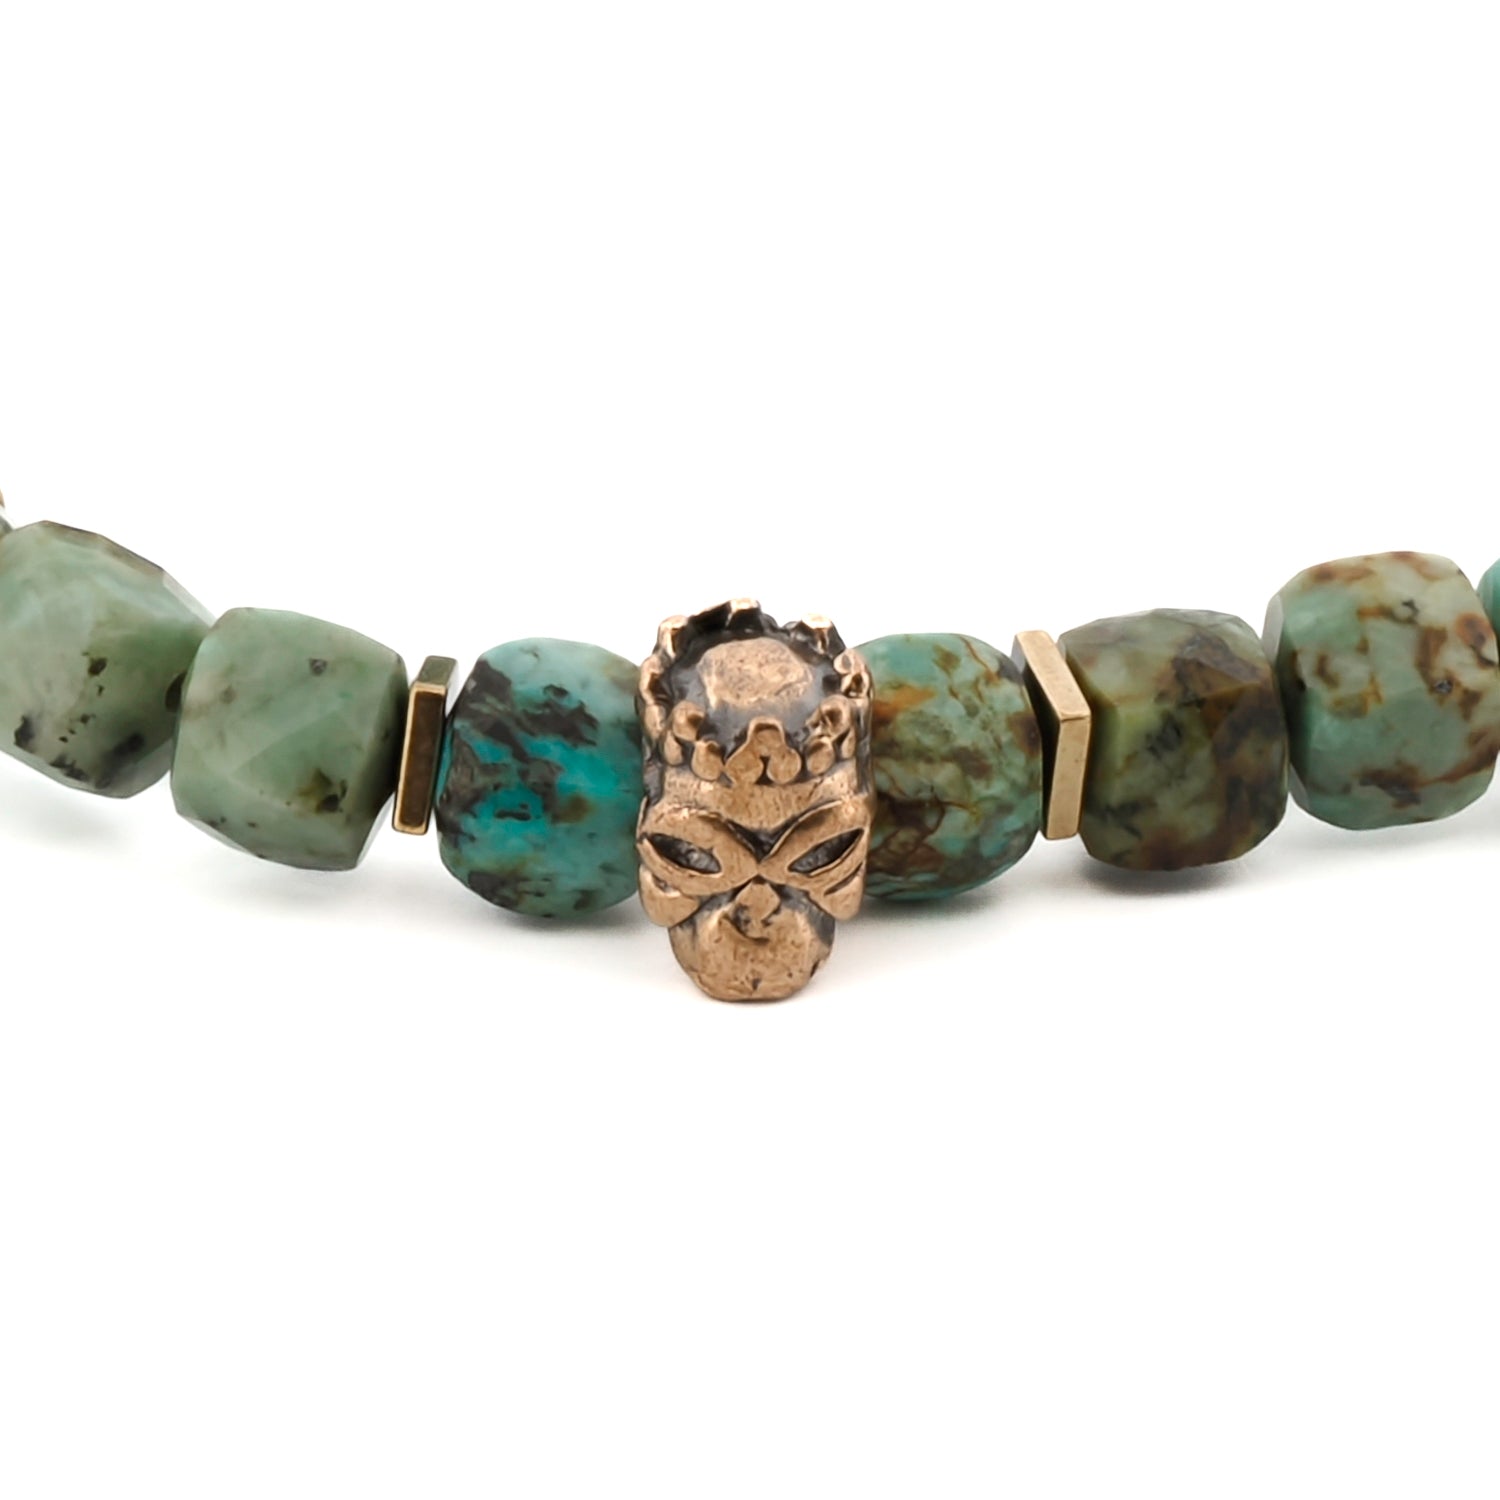 King Skull Turquoise Stone Good Fortune Beaded Bracelet